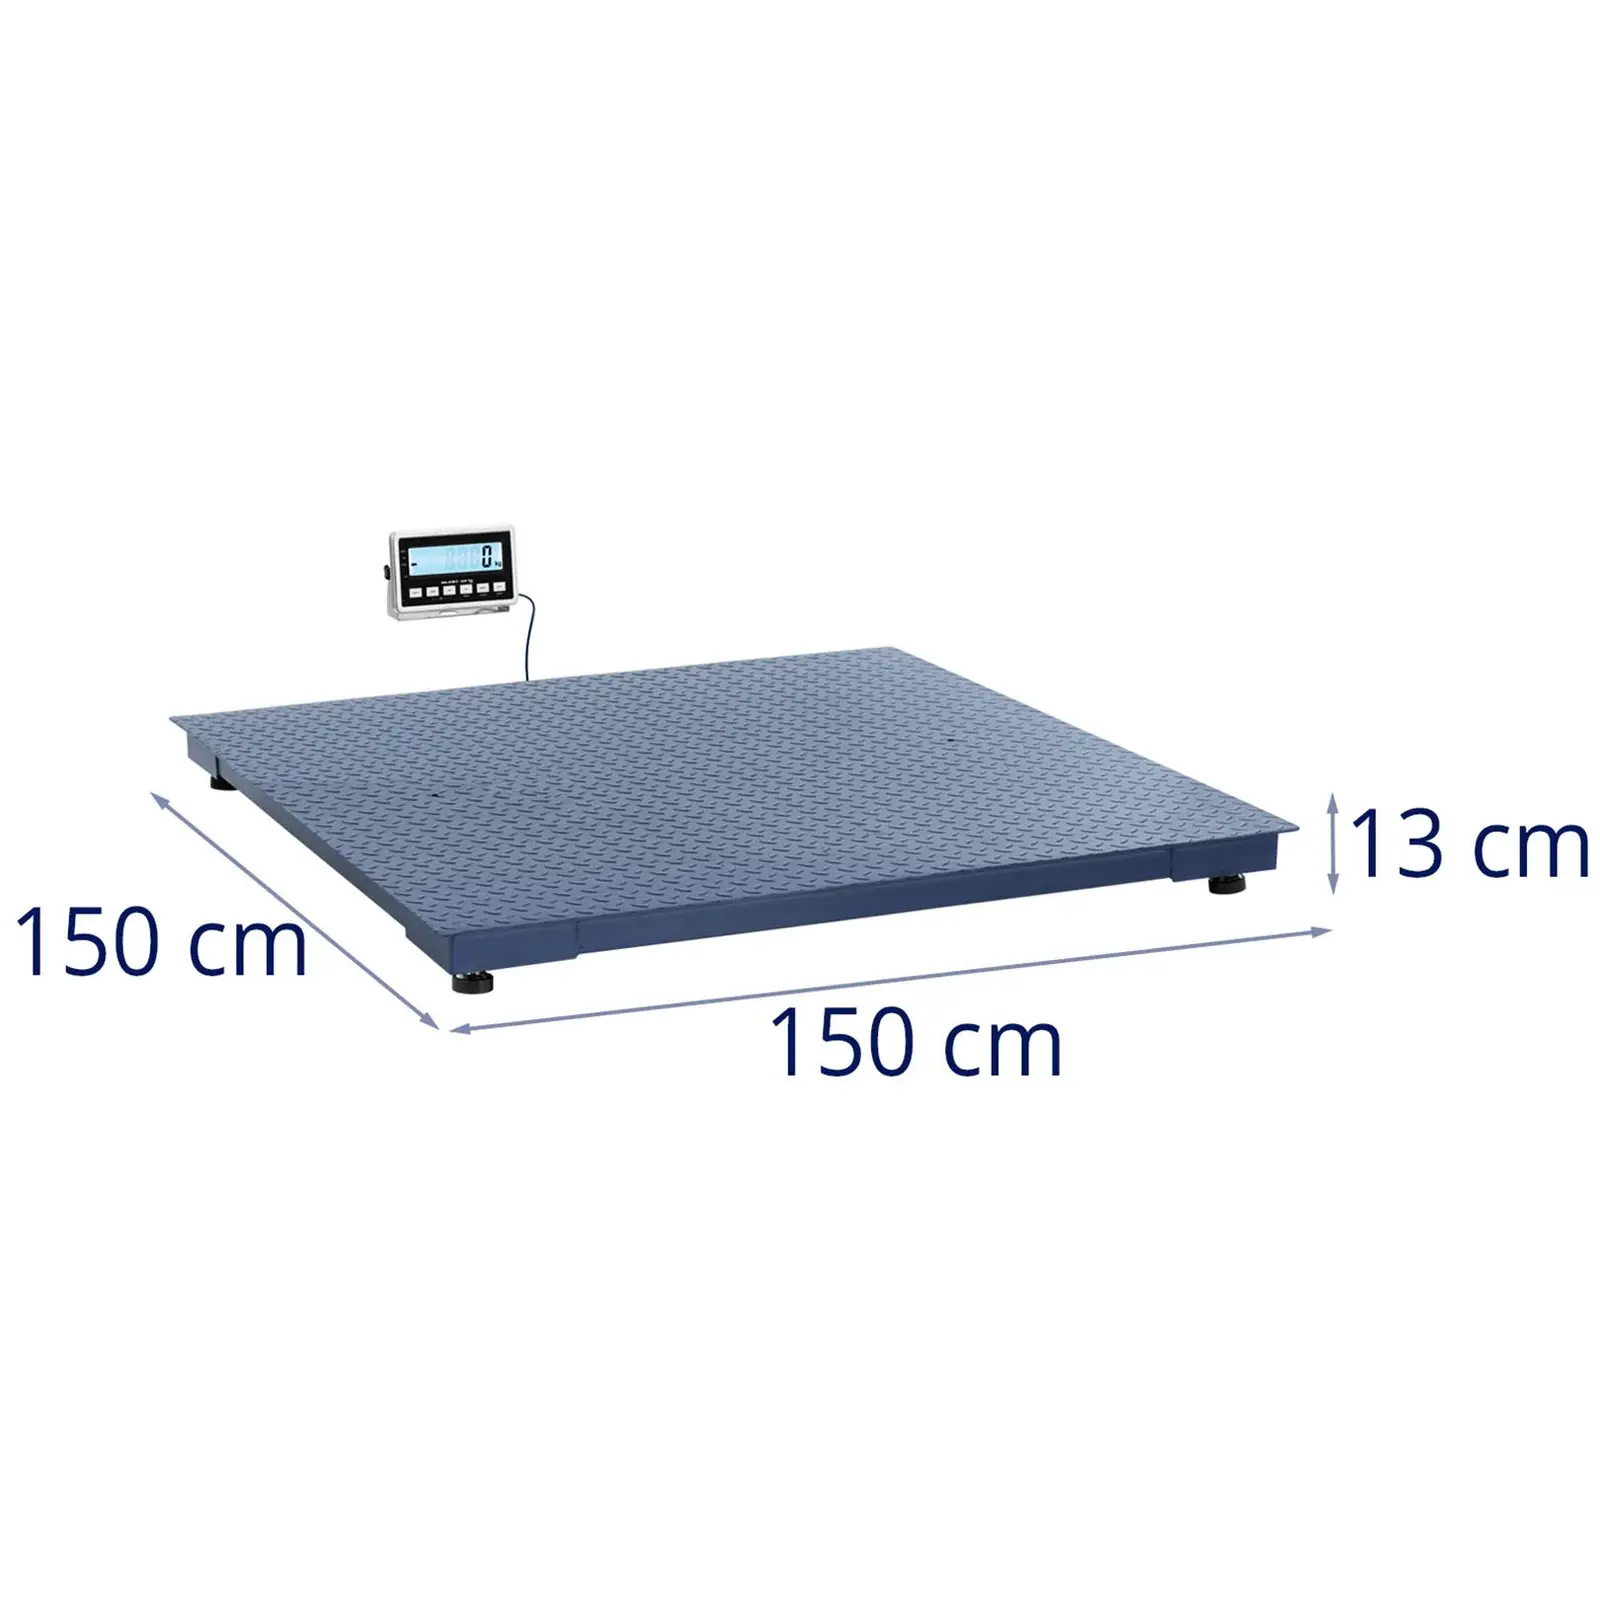 Bilancia da pavimento - 3000 kg / 1 kg - 1500 x 1500 mm - LCD